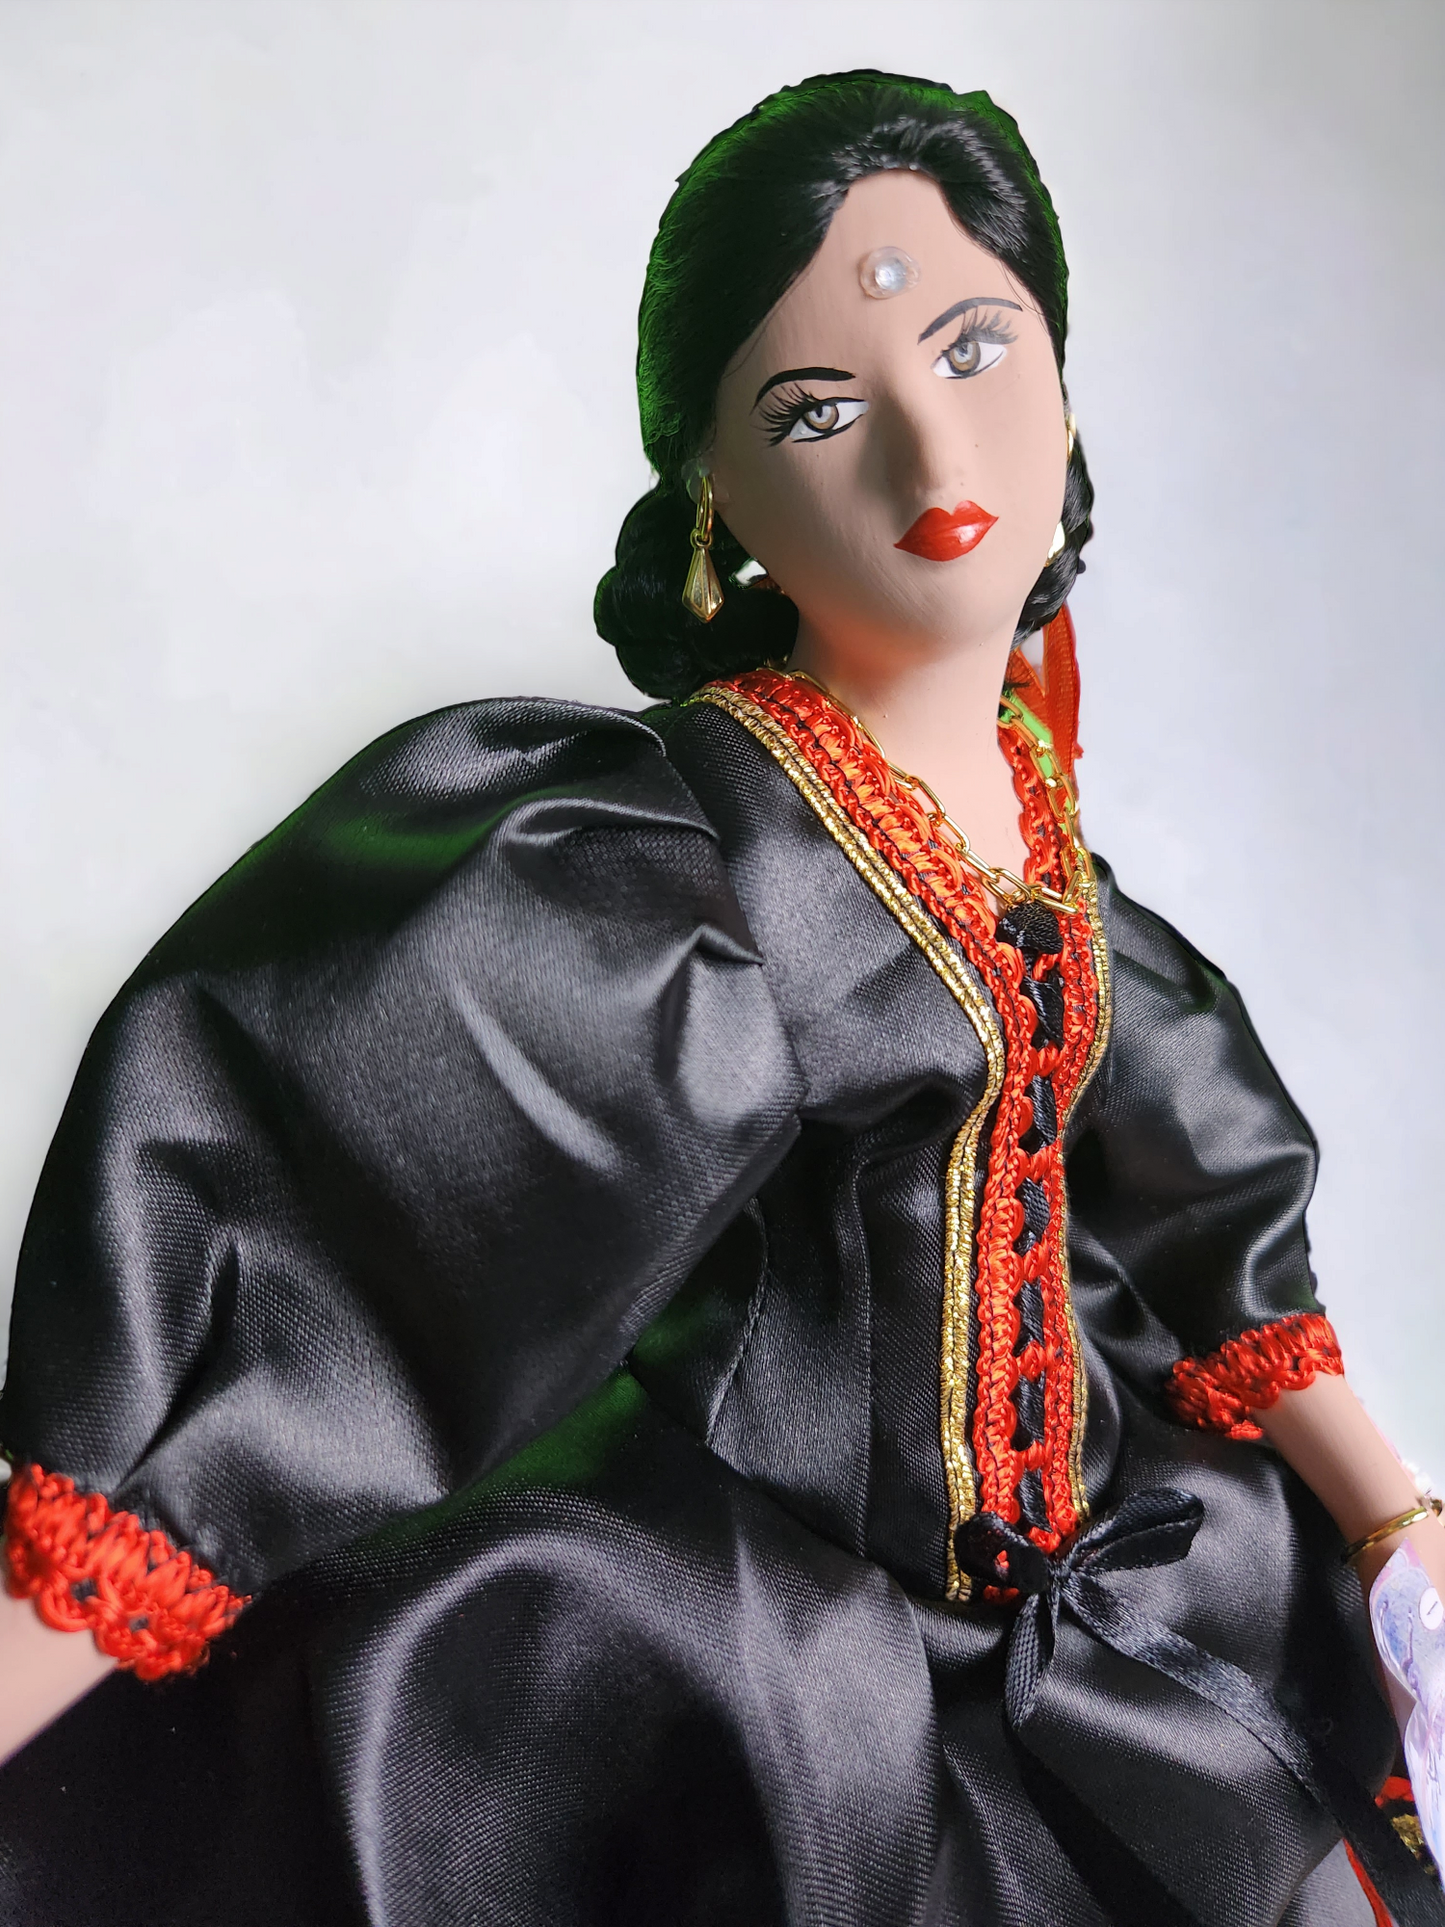 Gypsy doll